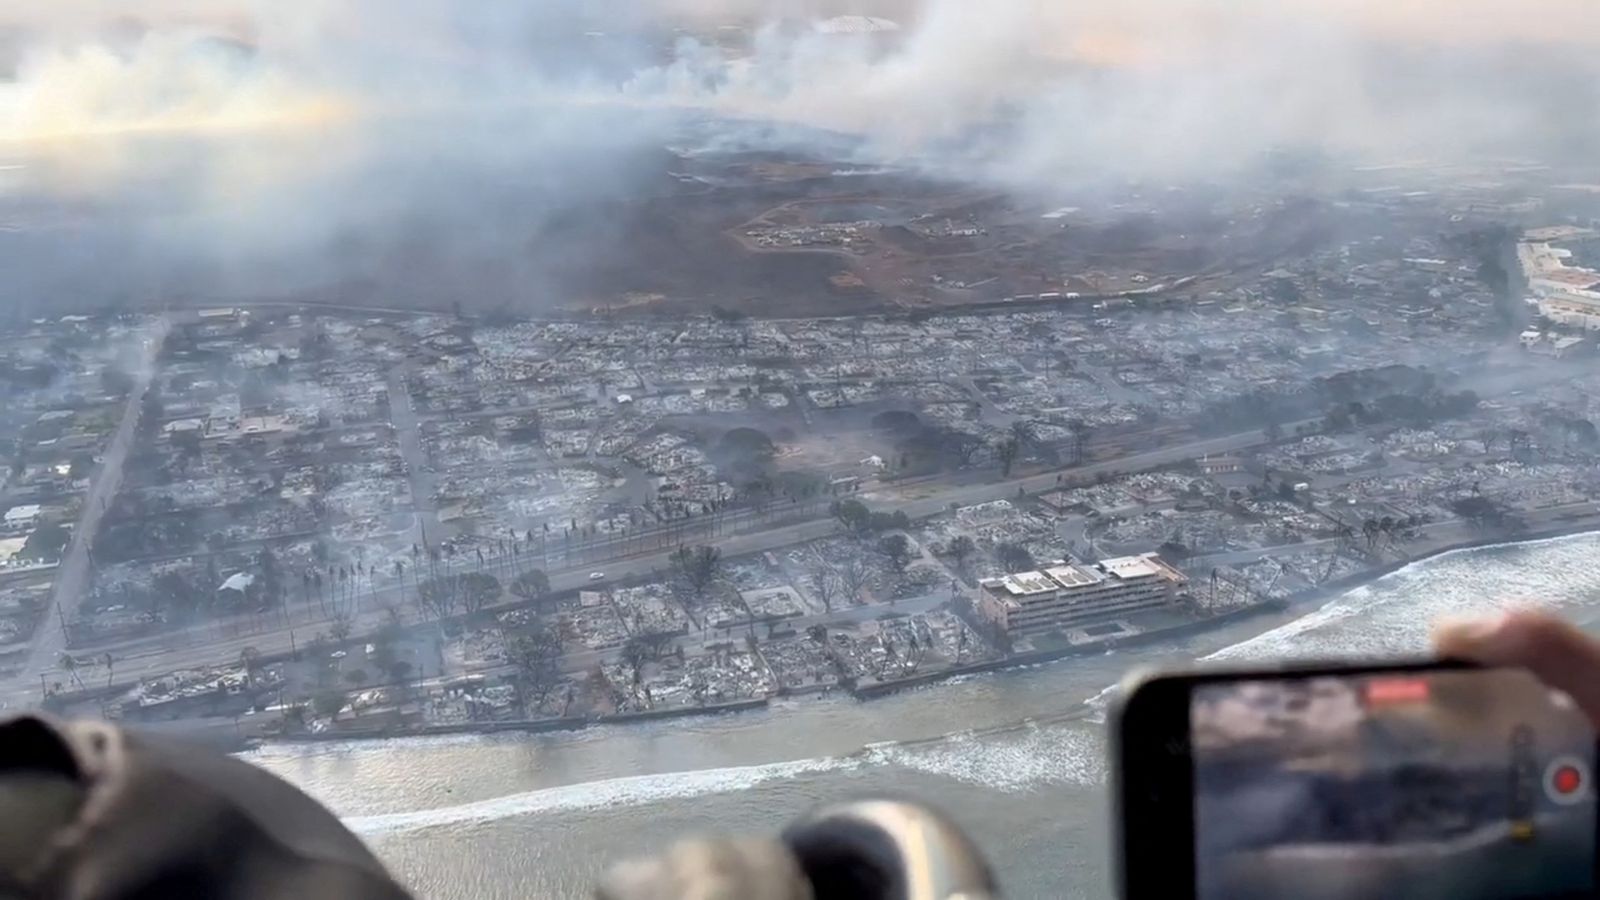 Aerial view of fire damage on Maui island - Fire Maui